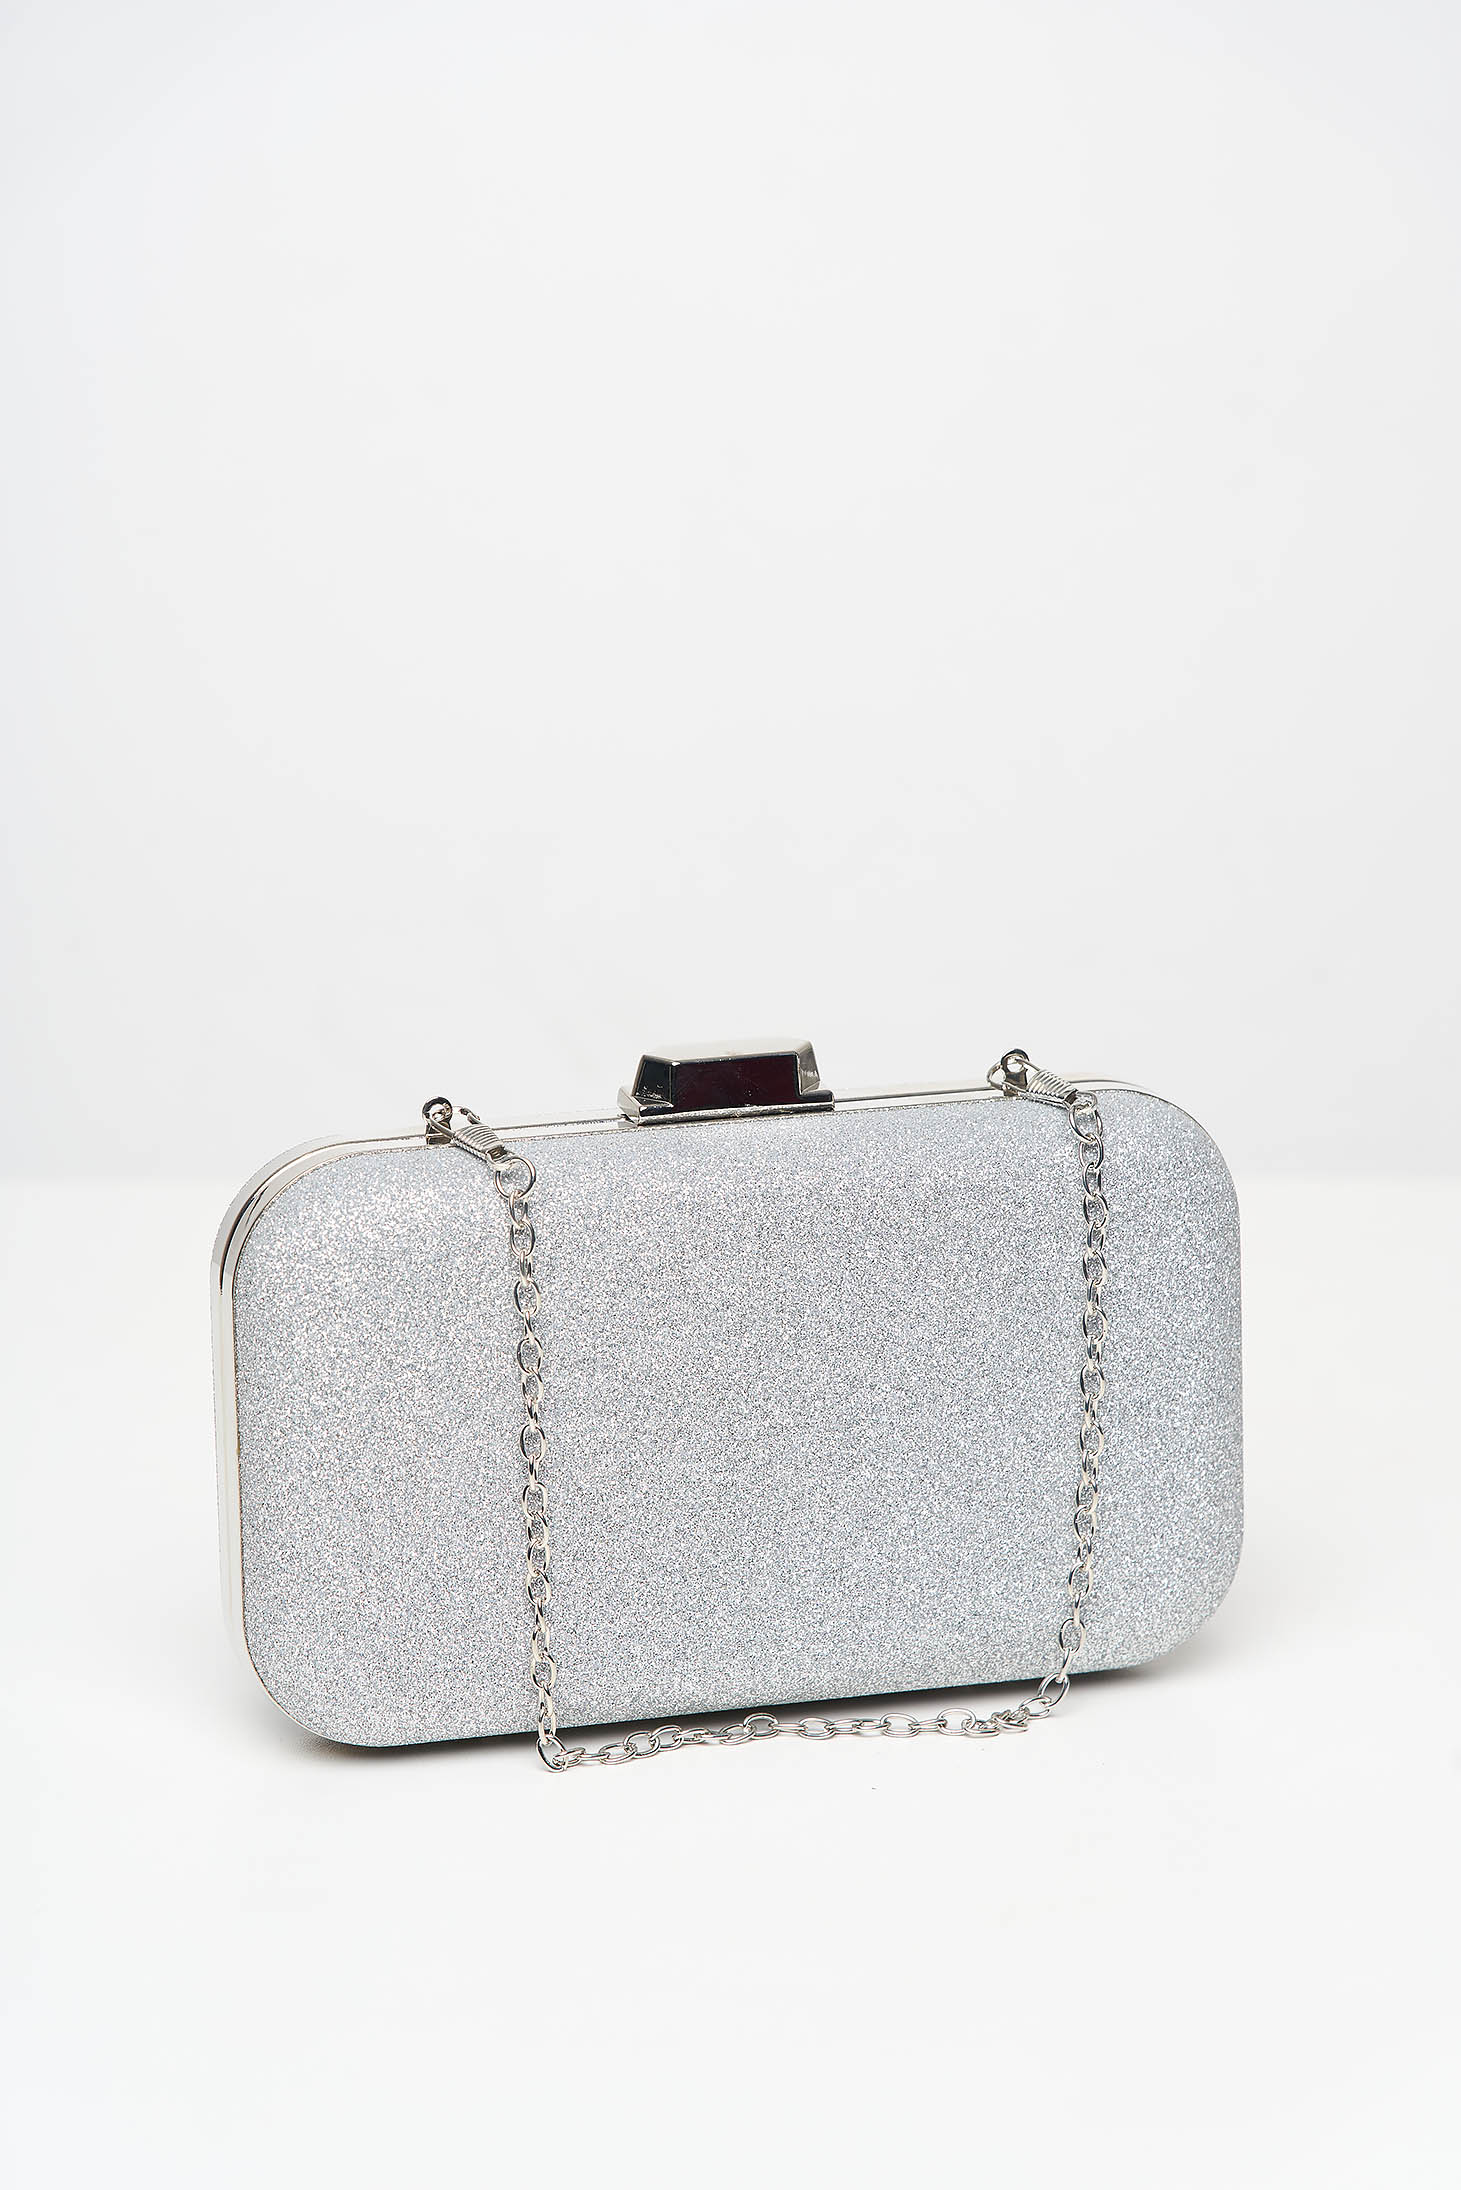 Ezüstszínű alkalmi táska fém lánccal ellátva, csillogó díszítésekkel és eltávolítható vékony láncal